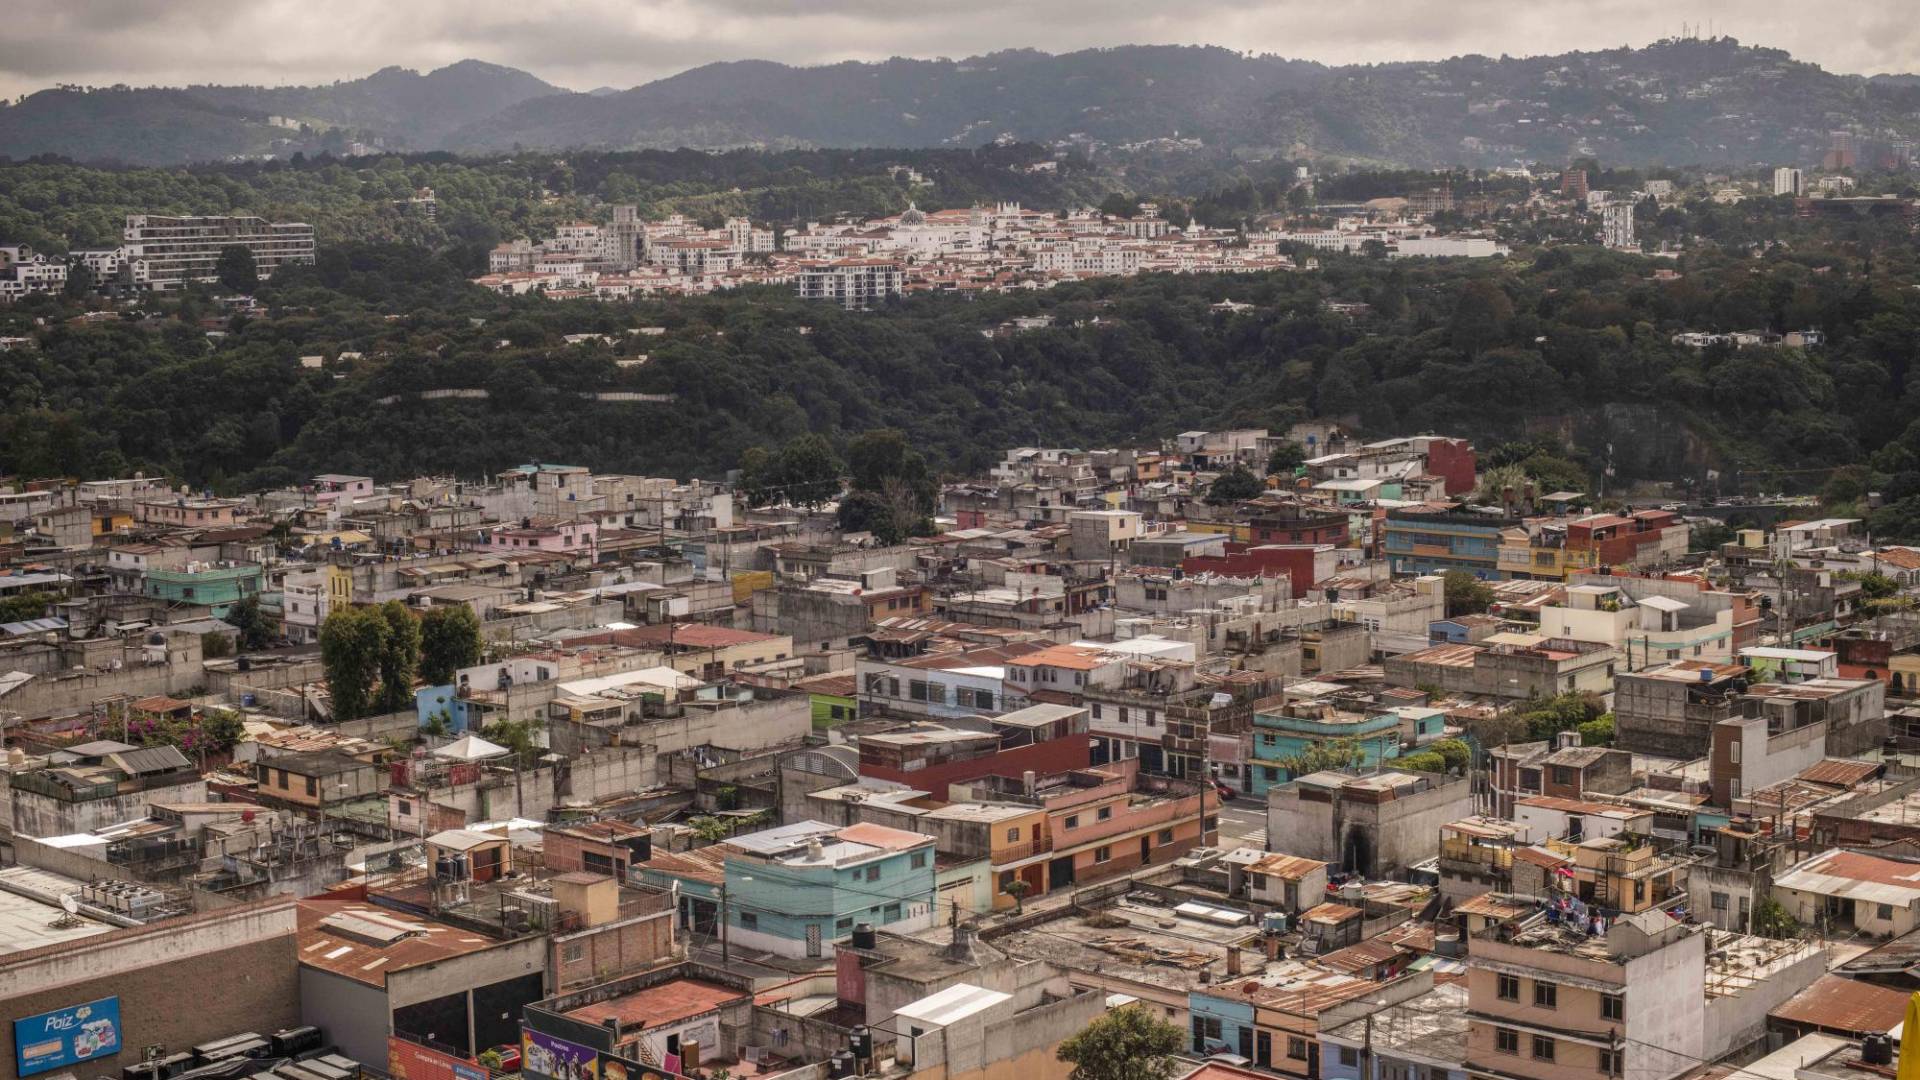 $!La ciudad de Cayalá, al fondo, es una ciudad reluciente y planeada a las afueras de la capital de Guatemala.